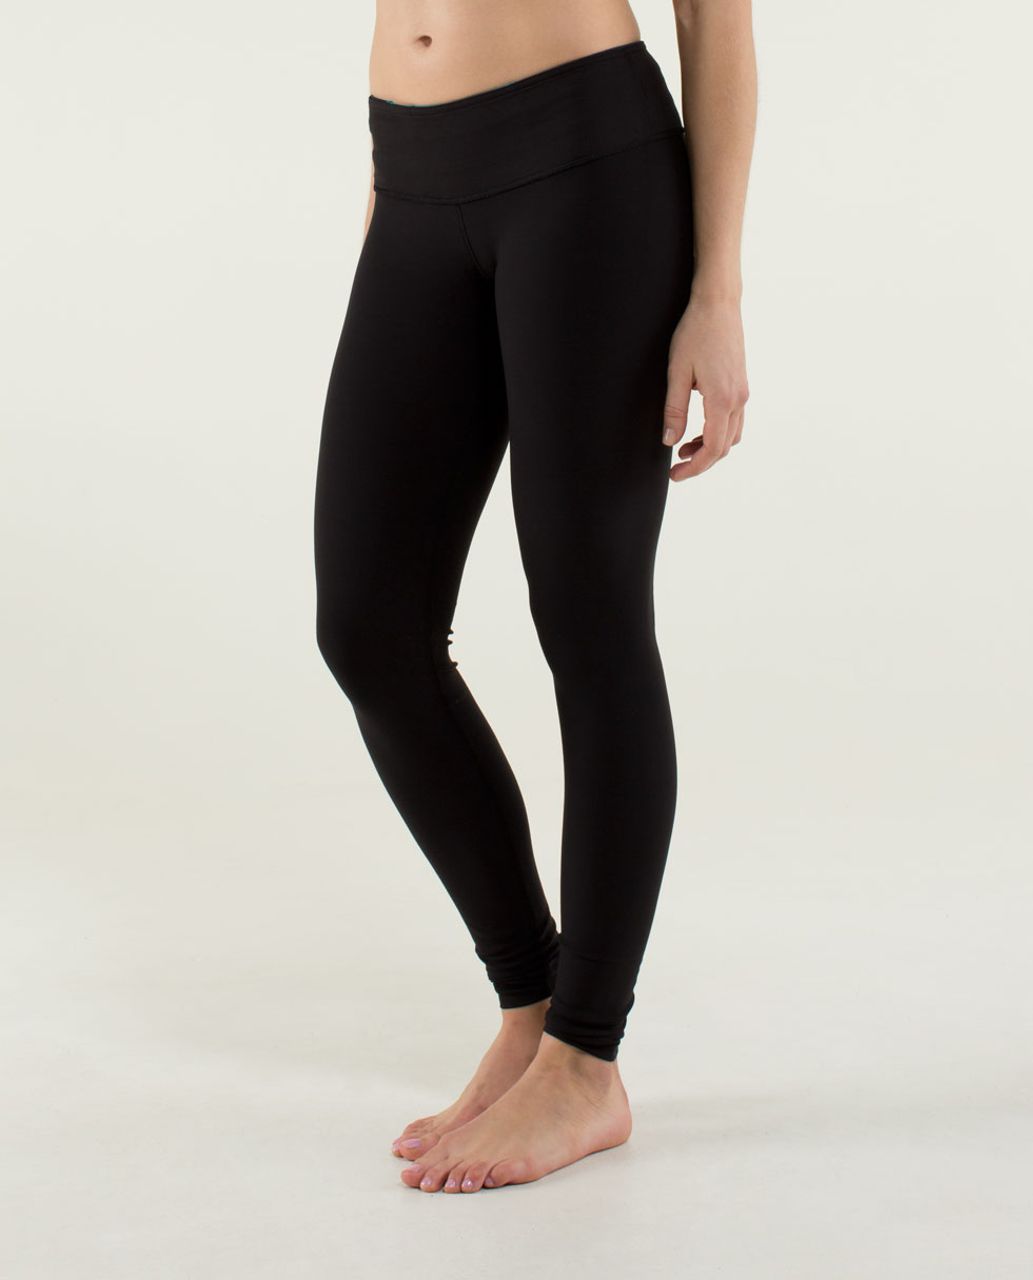 Ivivva Lululemon Girls Leggings Black Quilted Side Panel Ankle Zipper Size  14 